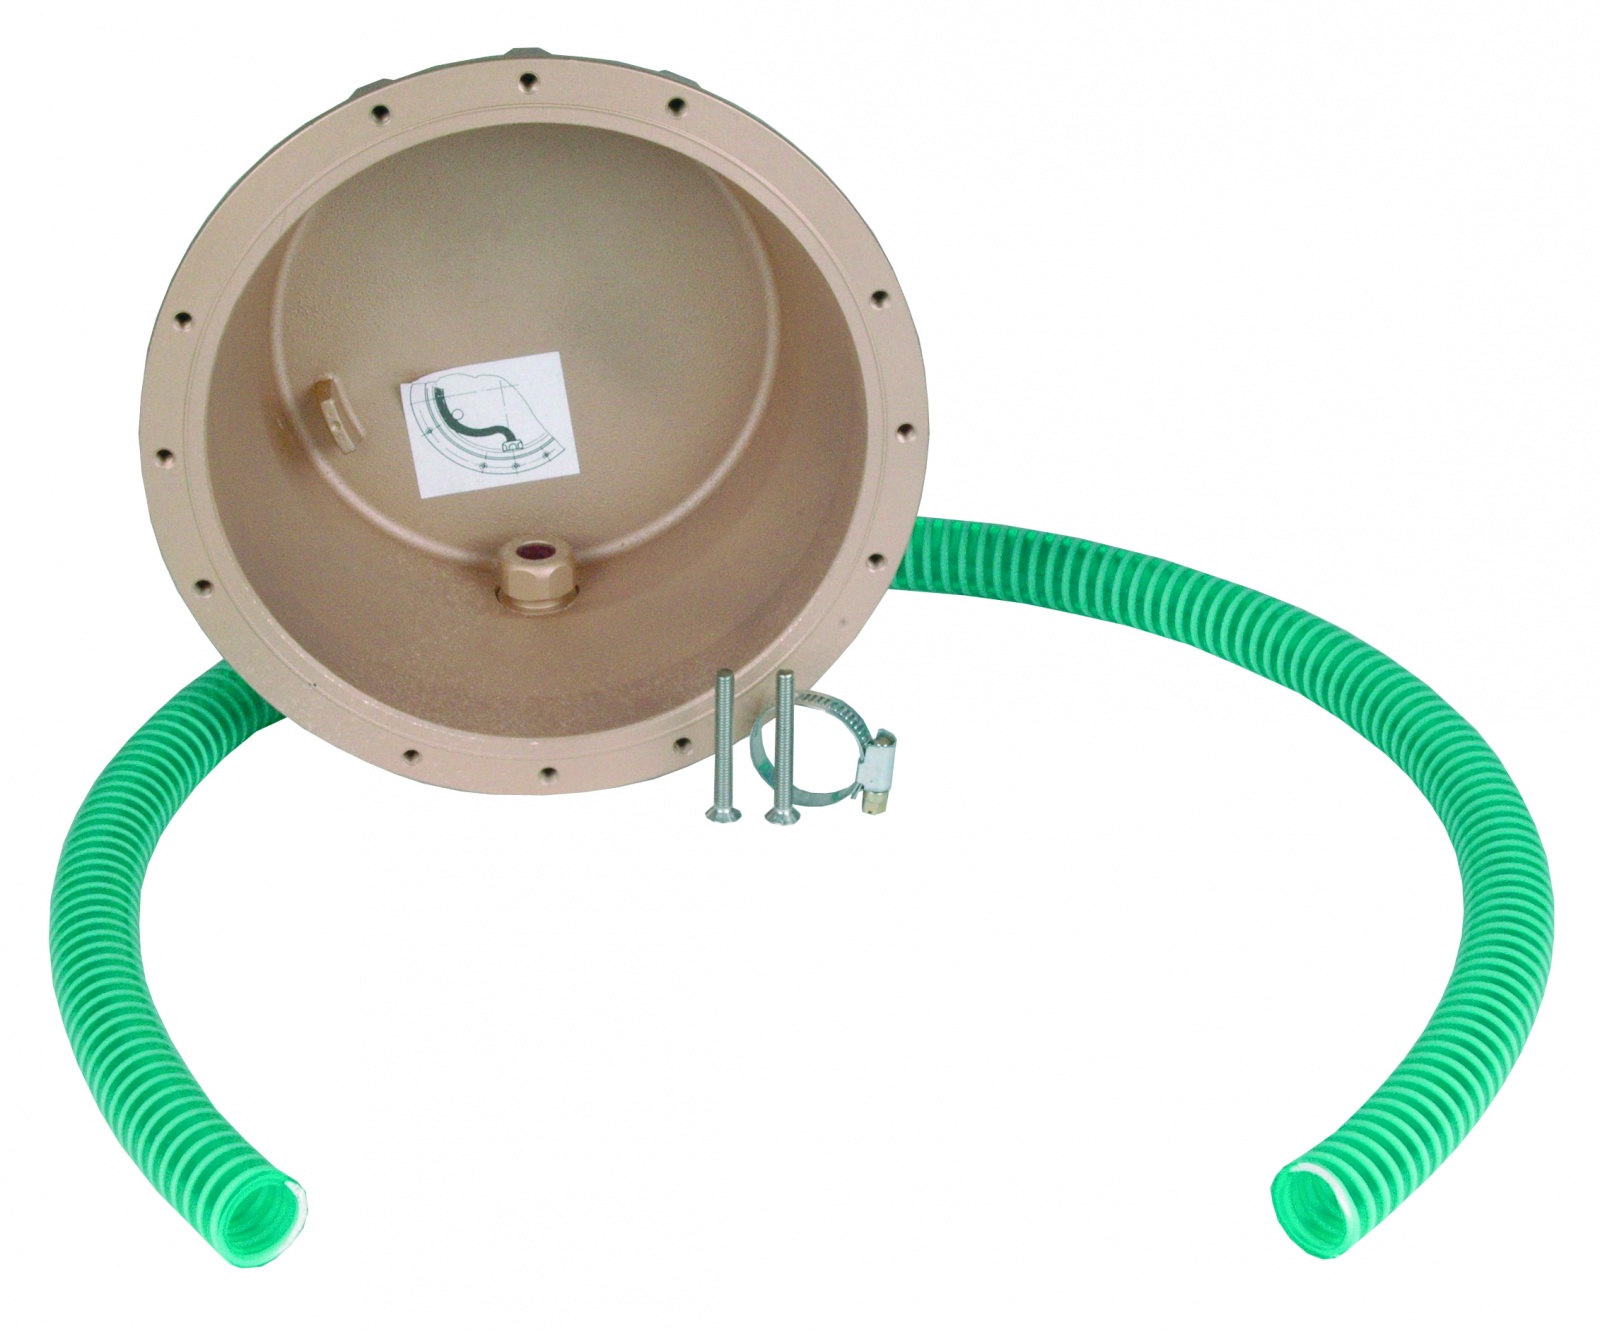 Boitier d’encastrement en laiton ou bronze pour projecteur et haut-parleur subaquatique ø 270 mm, pour bassin carrelé ou liner